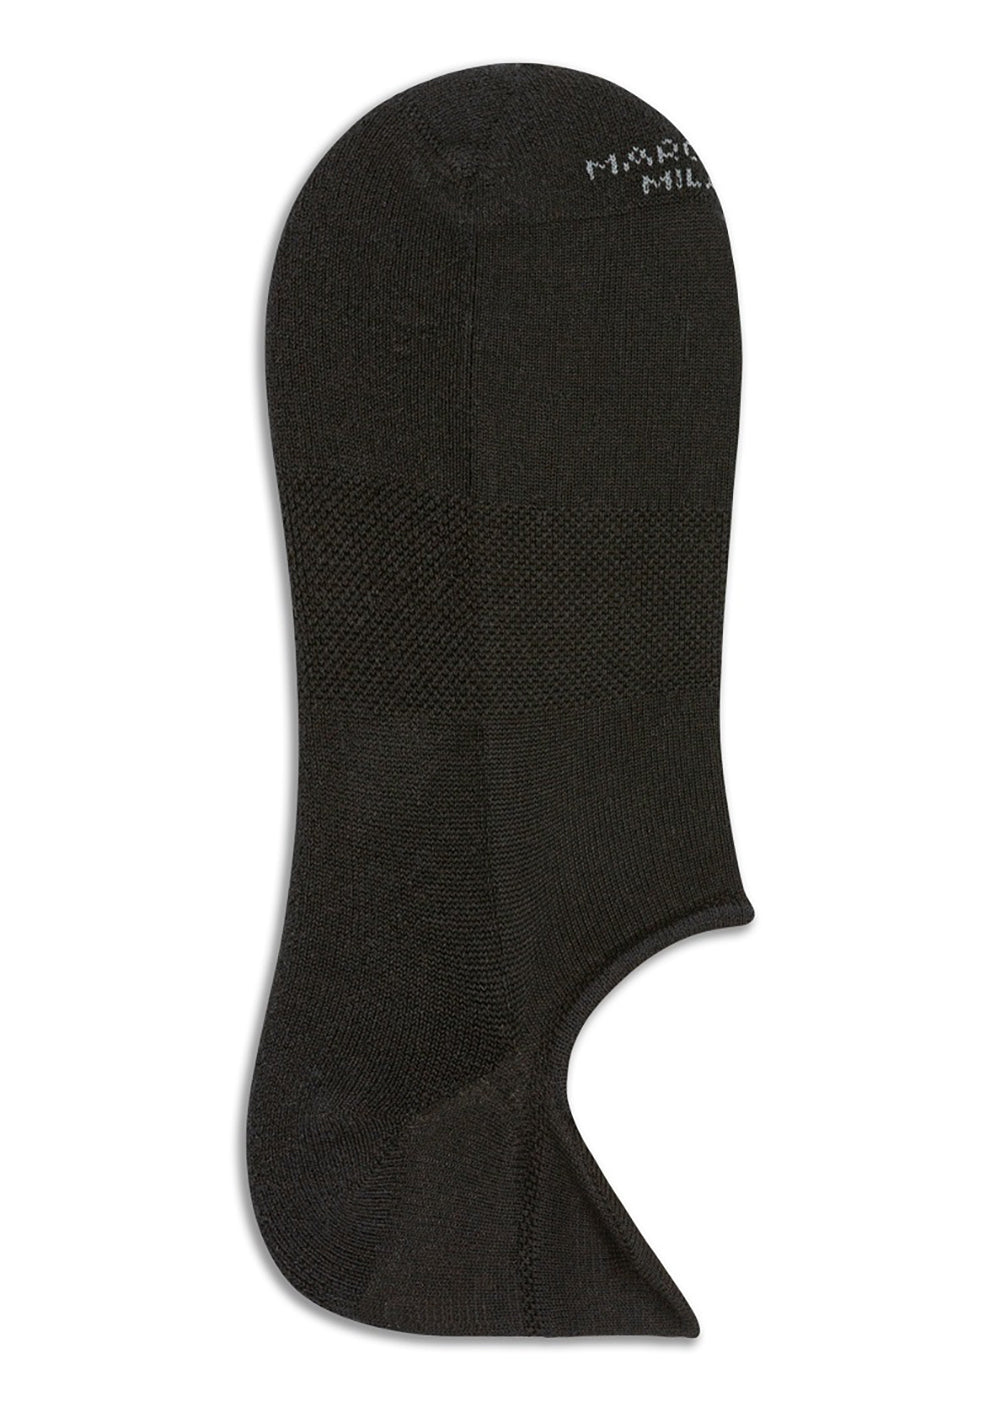 Cotton Sneaker Sock - Black - Marcoliani Canada - Danali